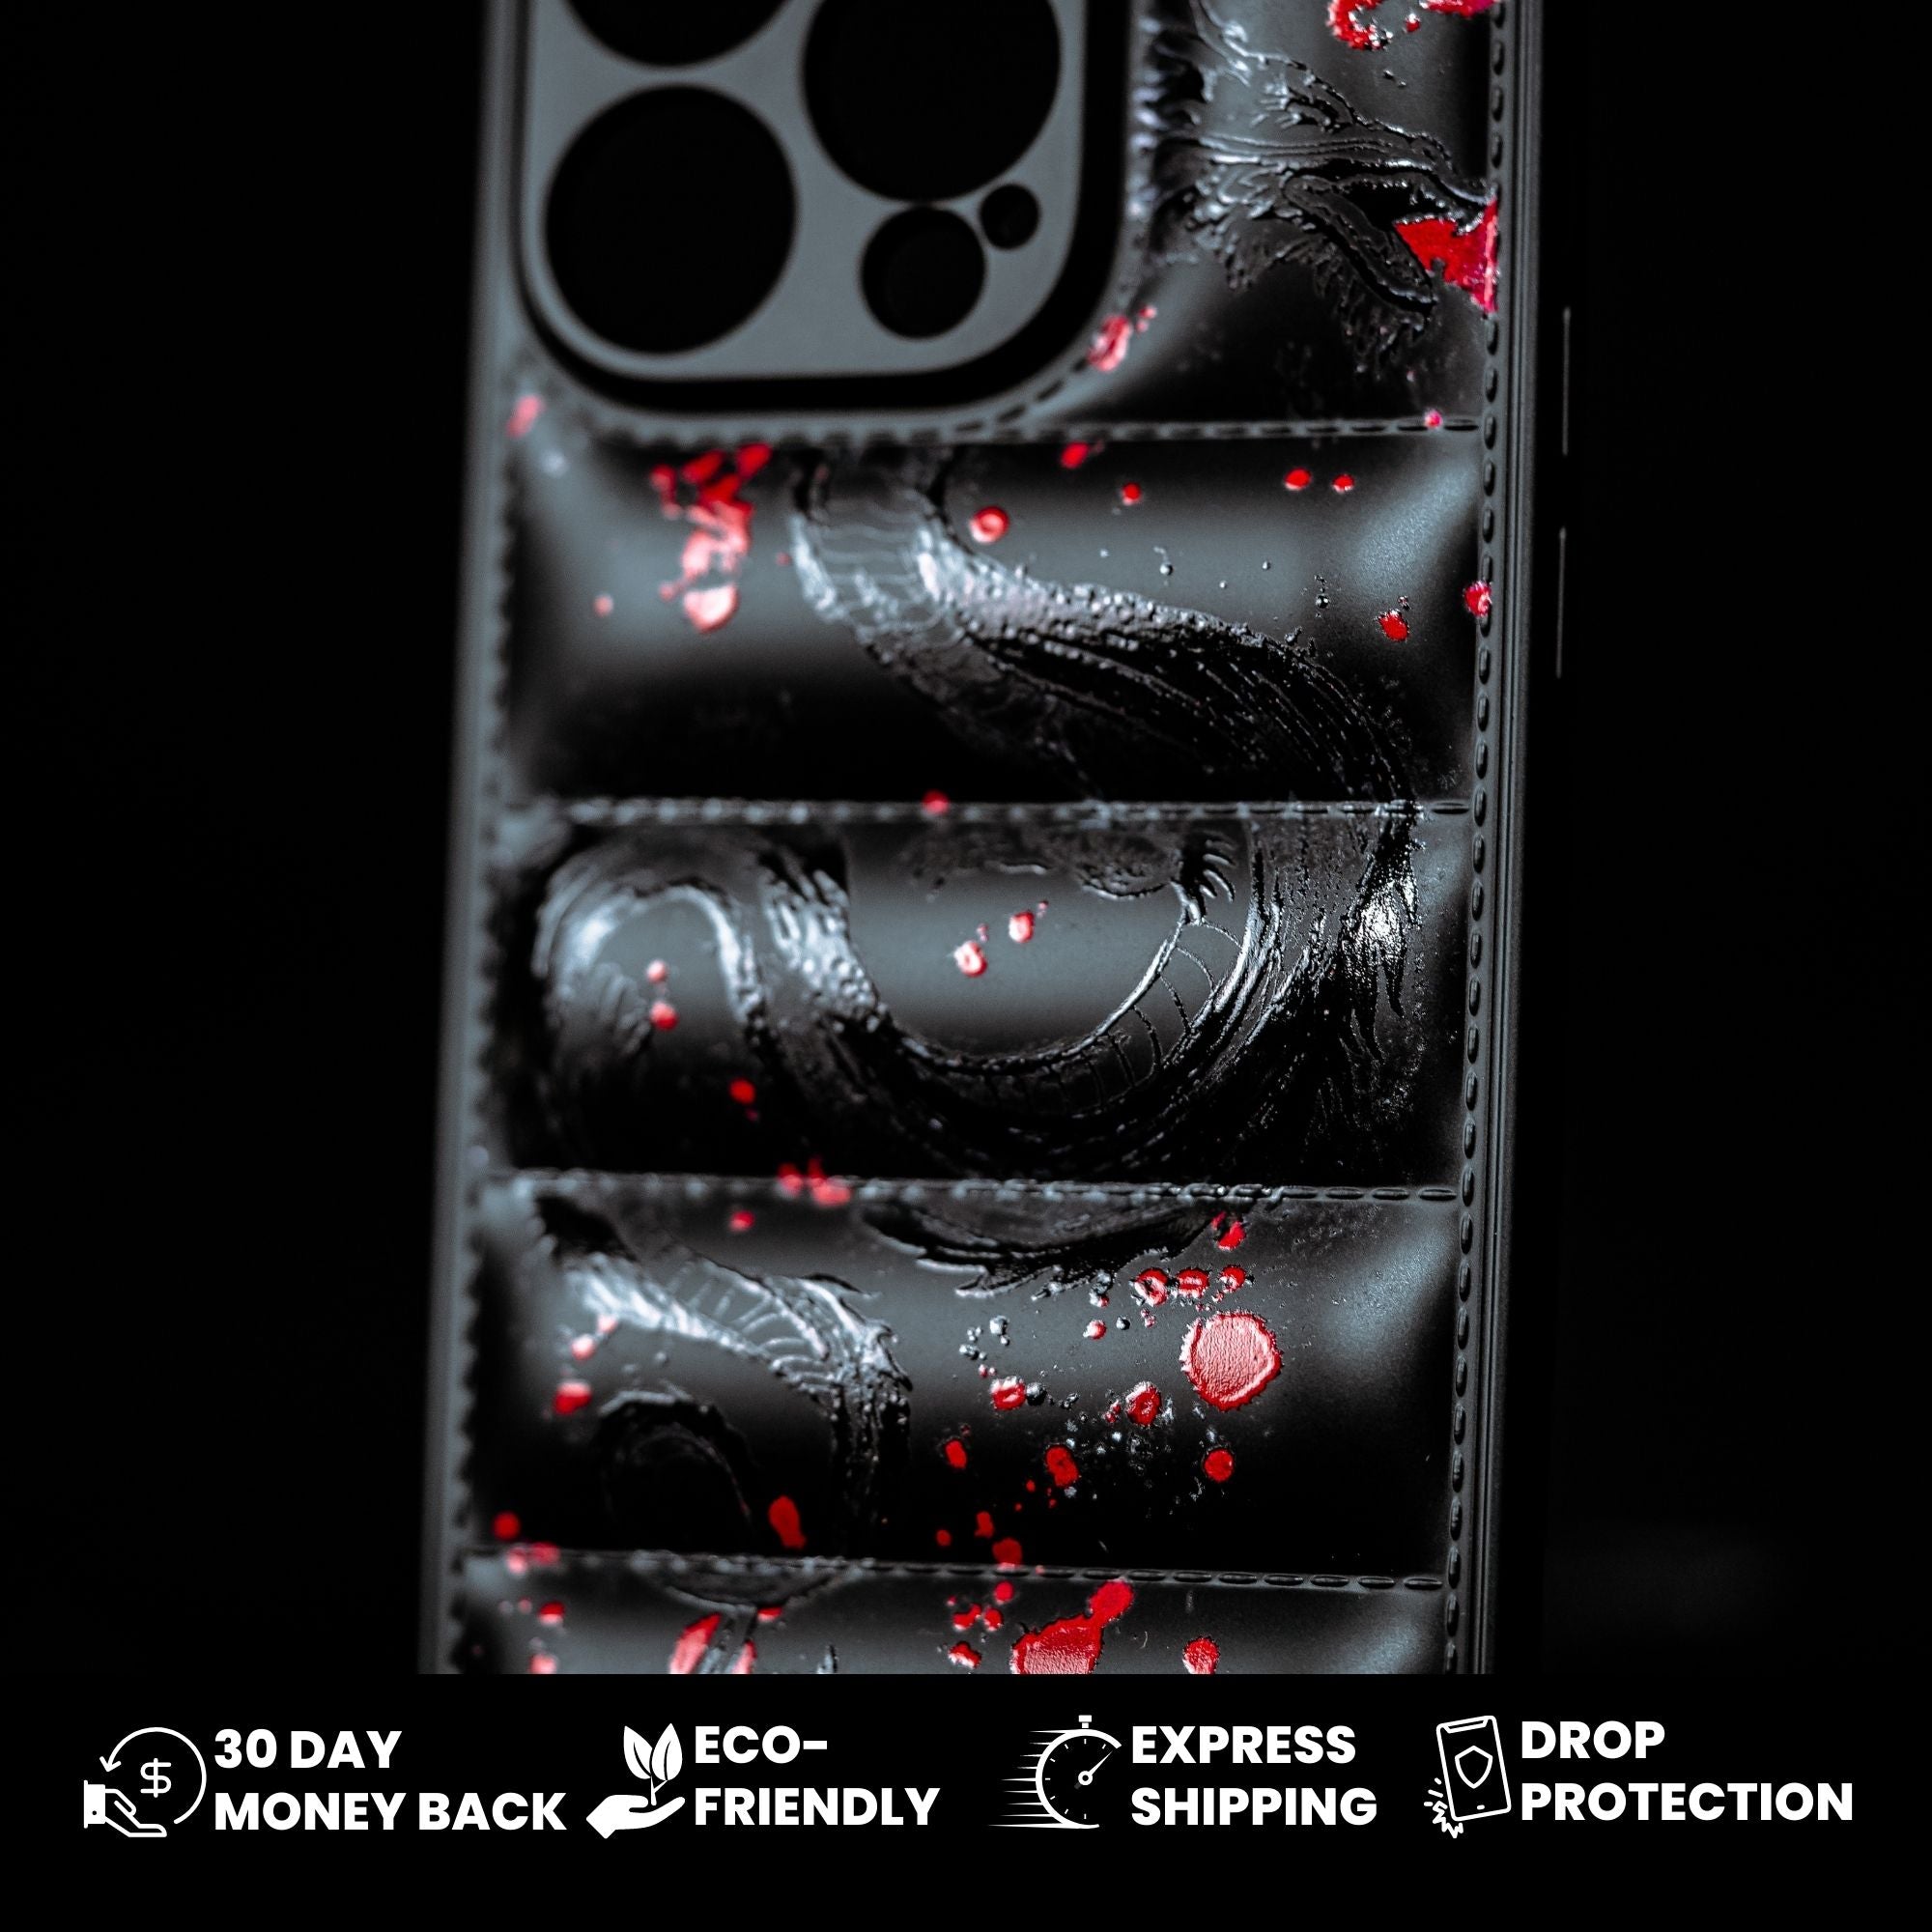 DRAGON X3 Air iPhone case